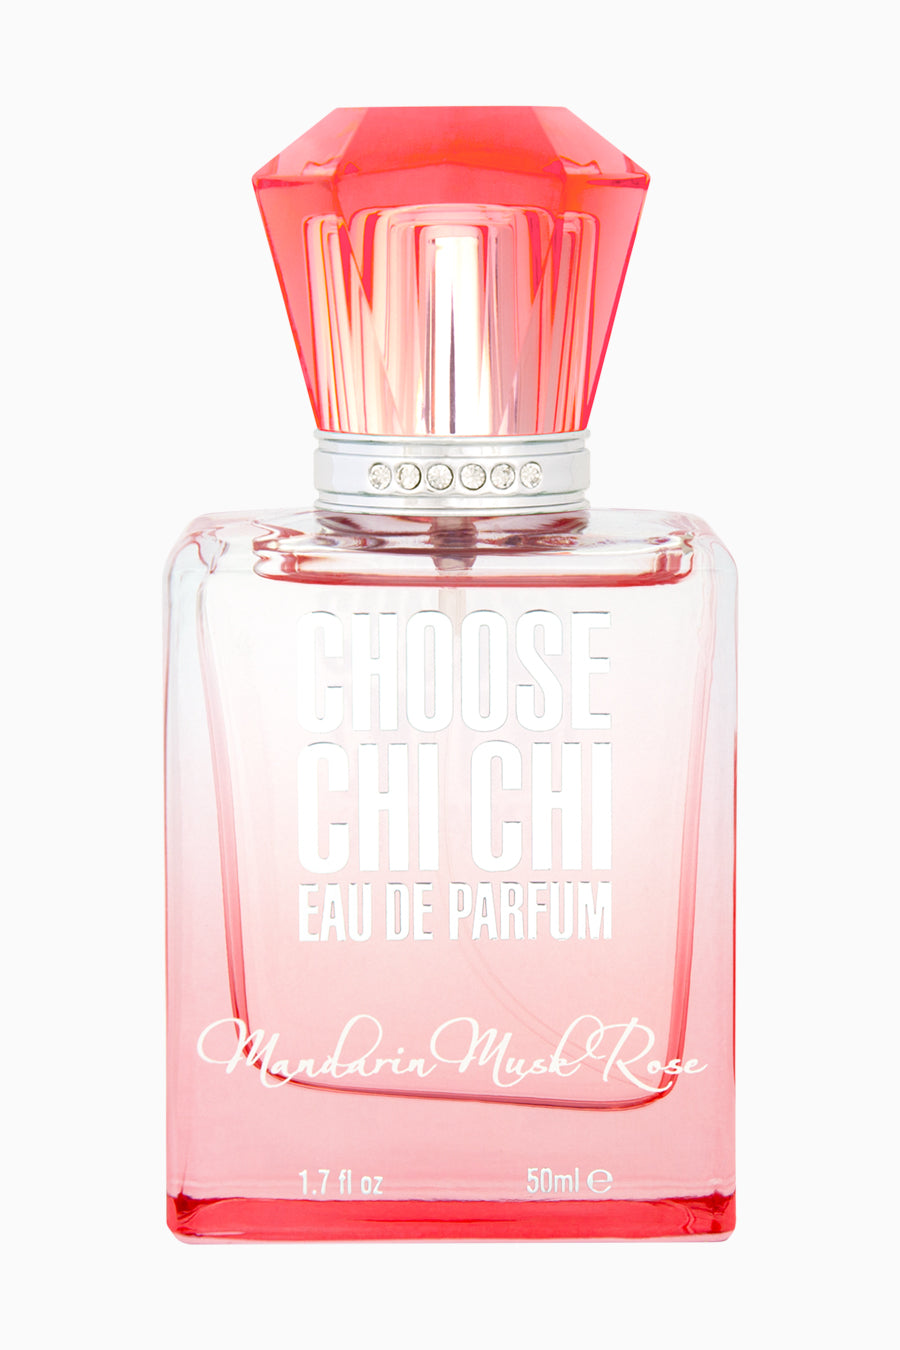 Mandarin Musk Rose - Eau De Parfum